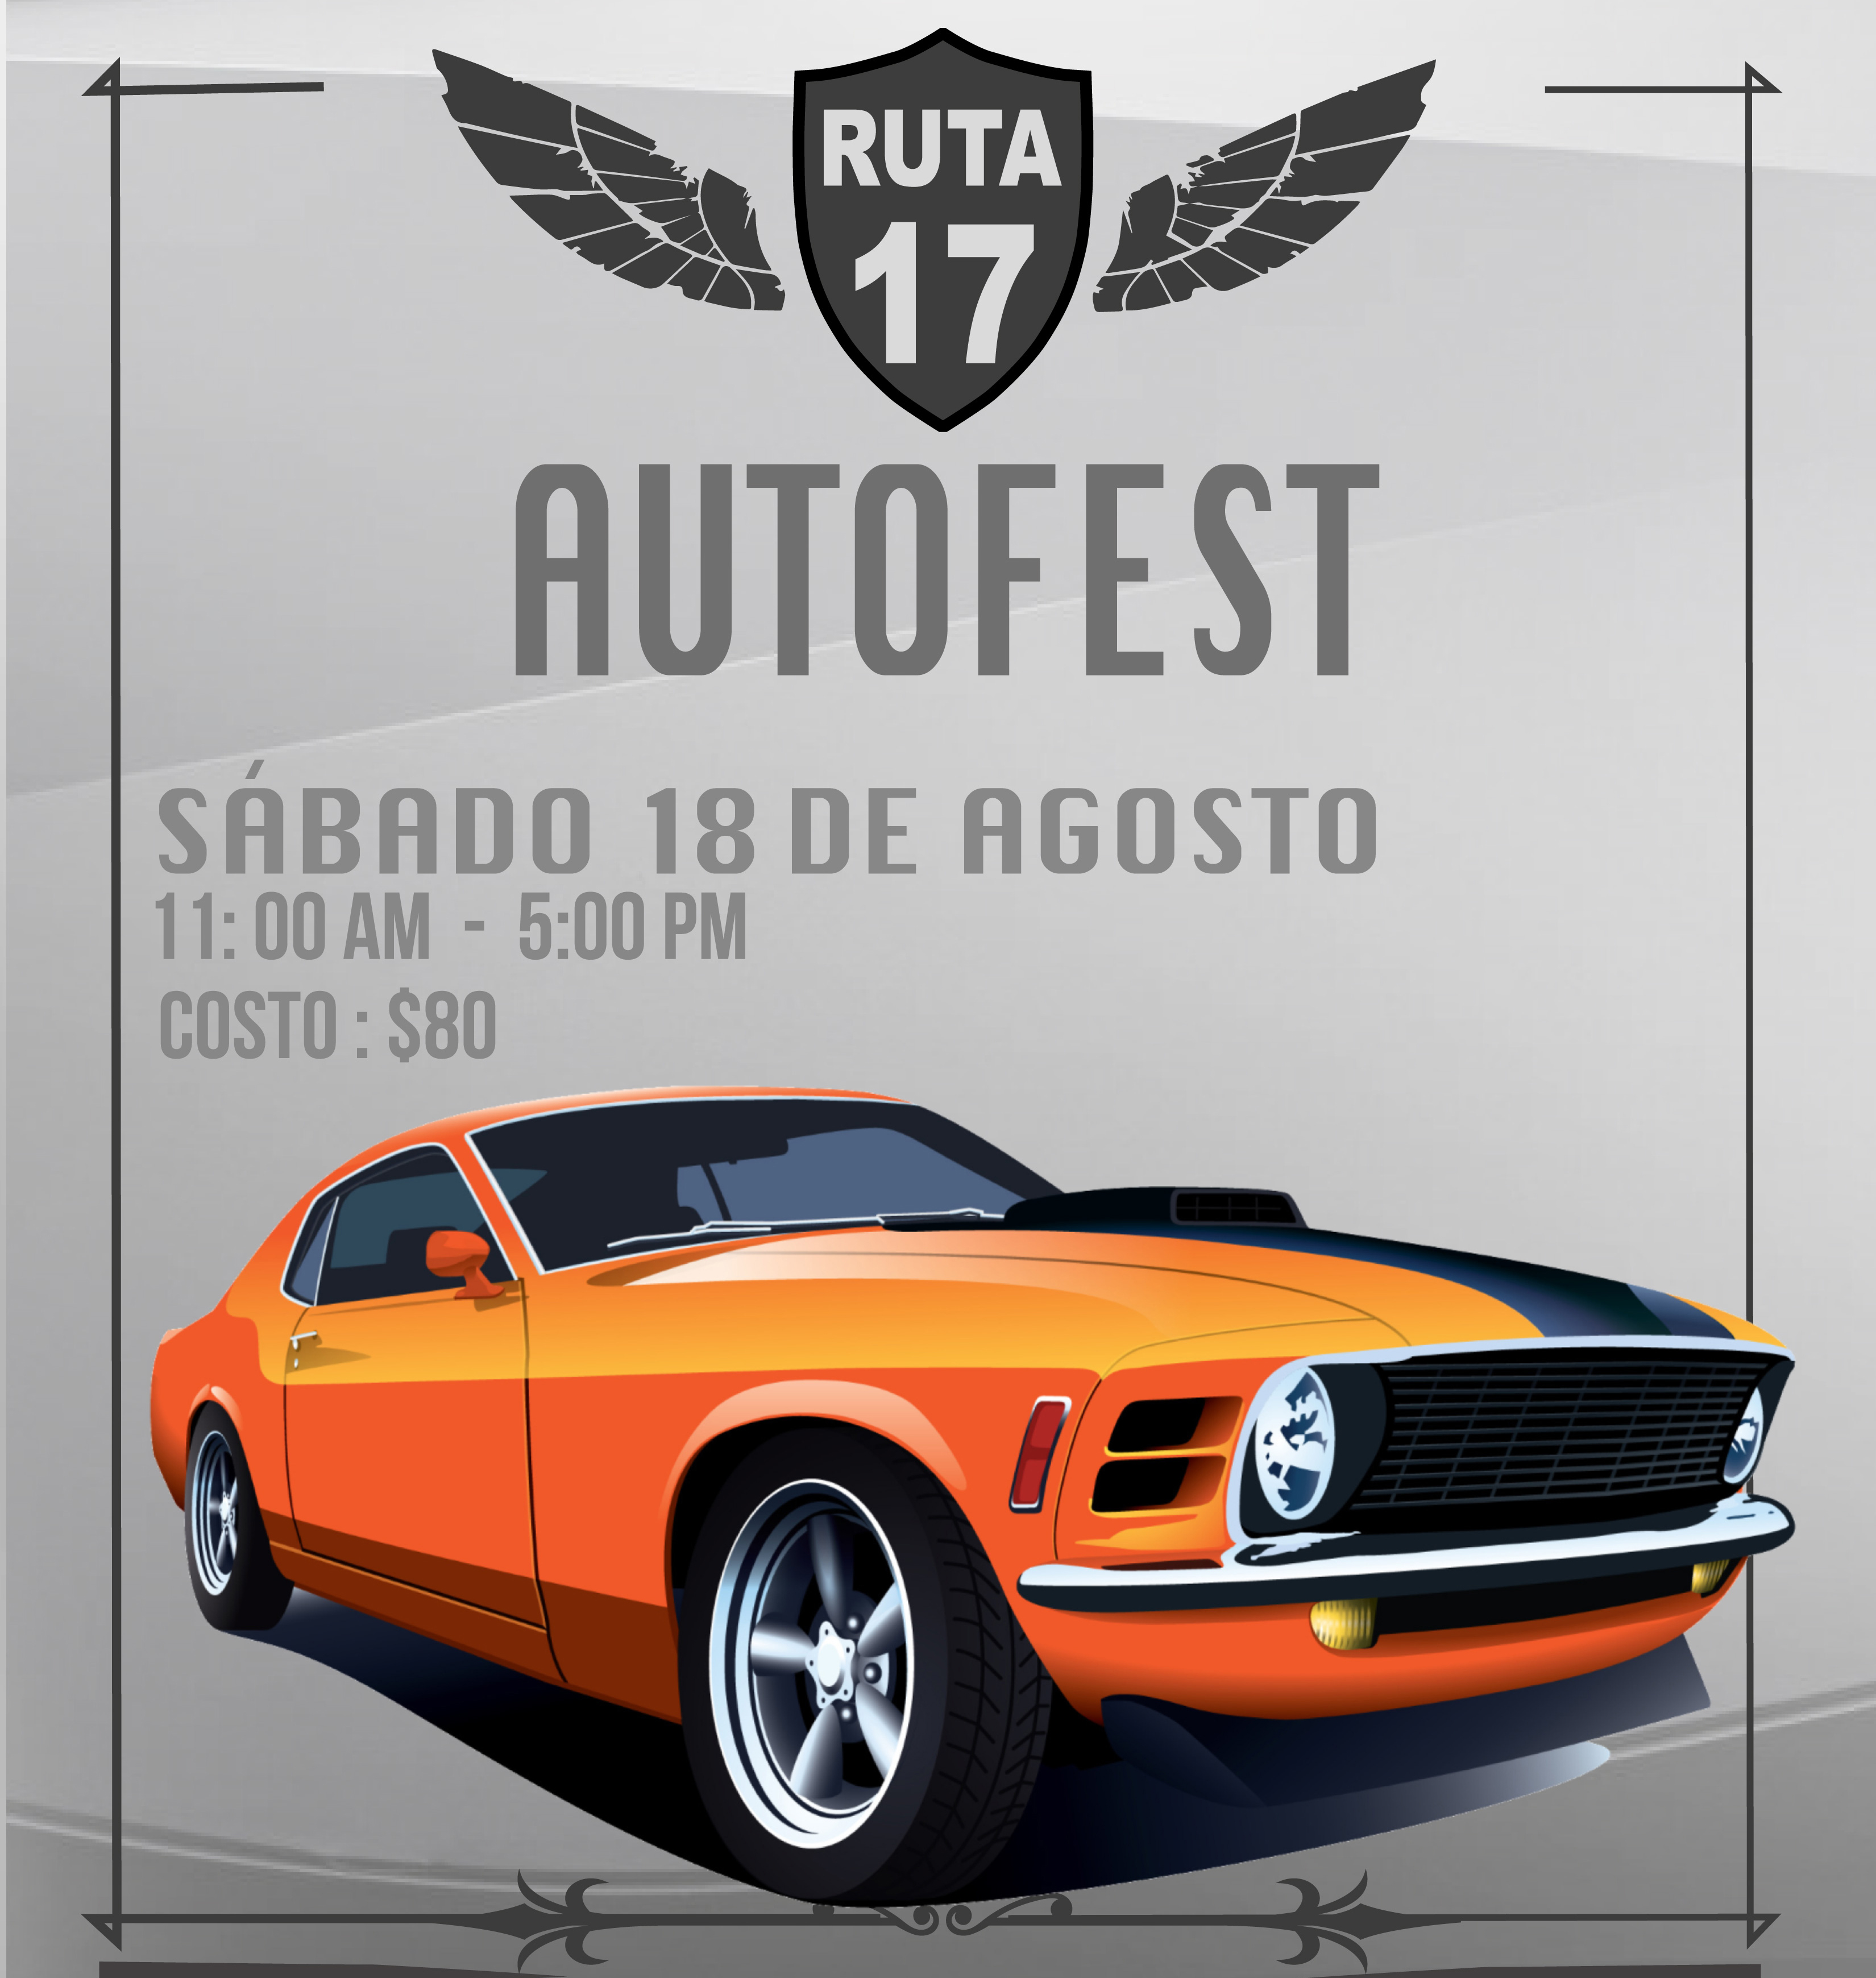 Ruta 17 Autofest